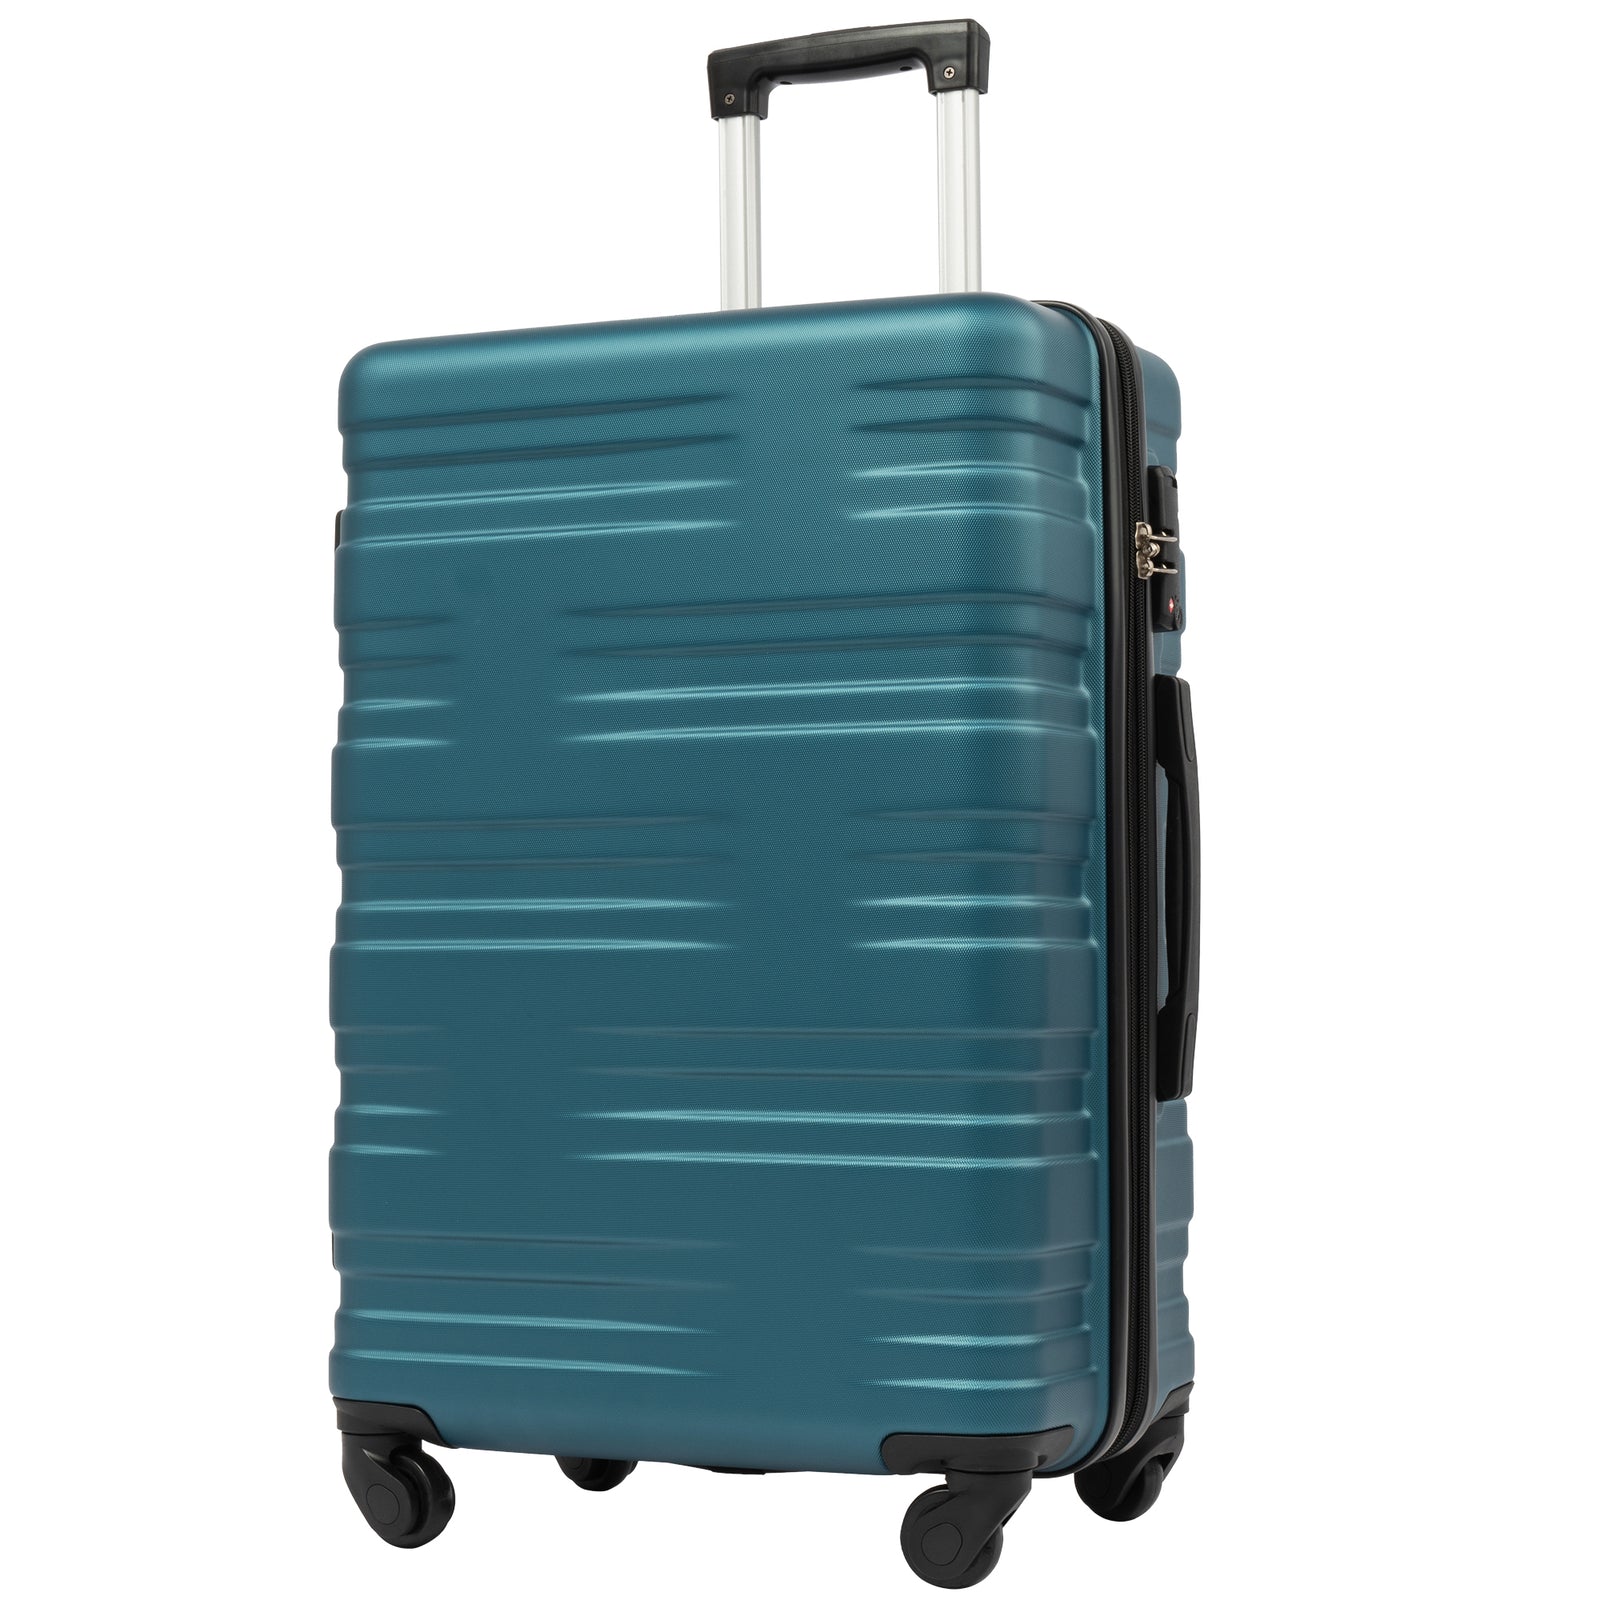 Hardshell Luggage Sets 3 Pcs Spinner Suitcase with TSA Lock Lightweight 20\'\'24\'\'28\'\'